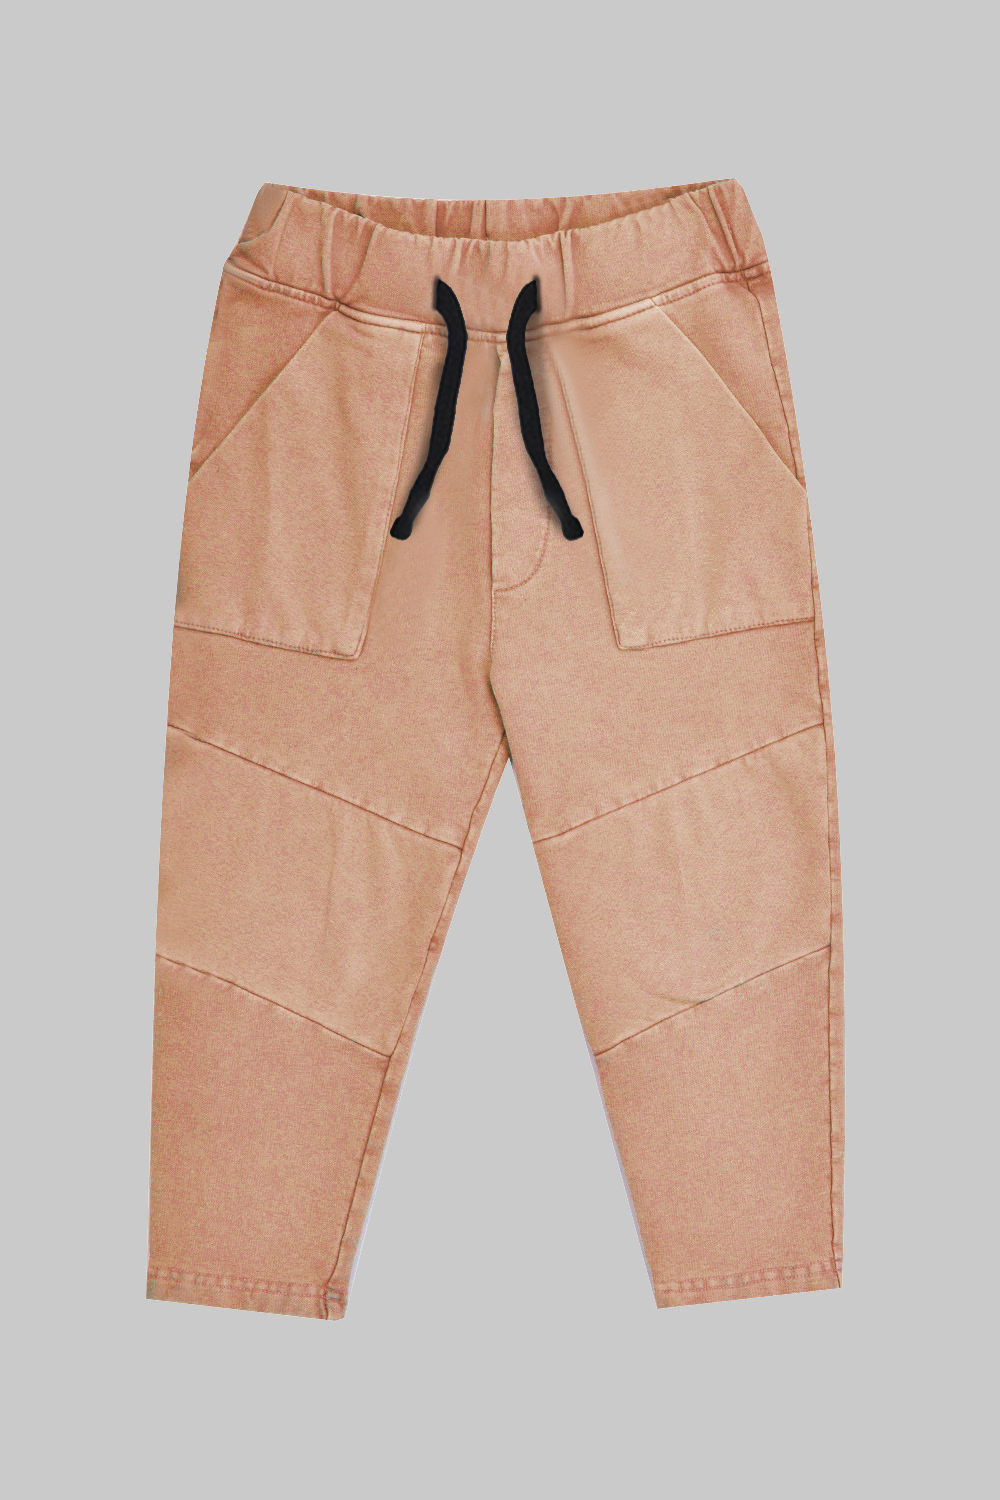 Vintage Camel Pocket Pants